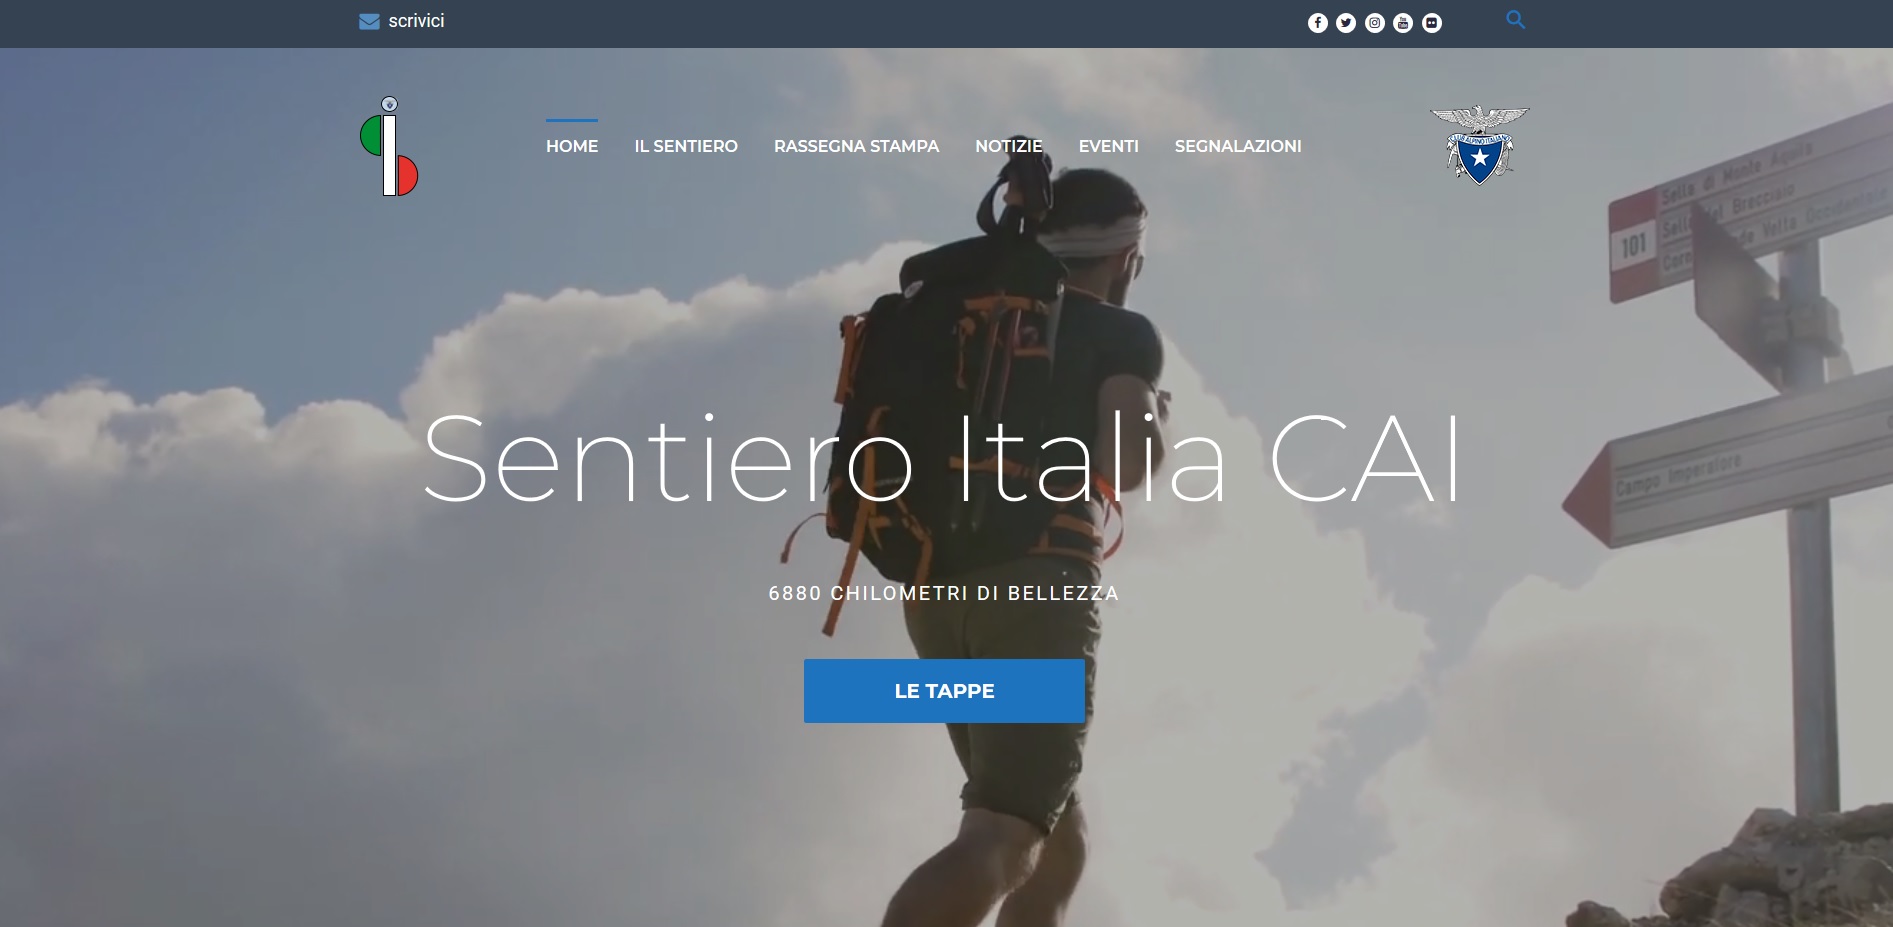 On line il sito del Sentiero Italia CAI